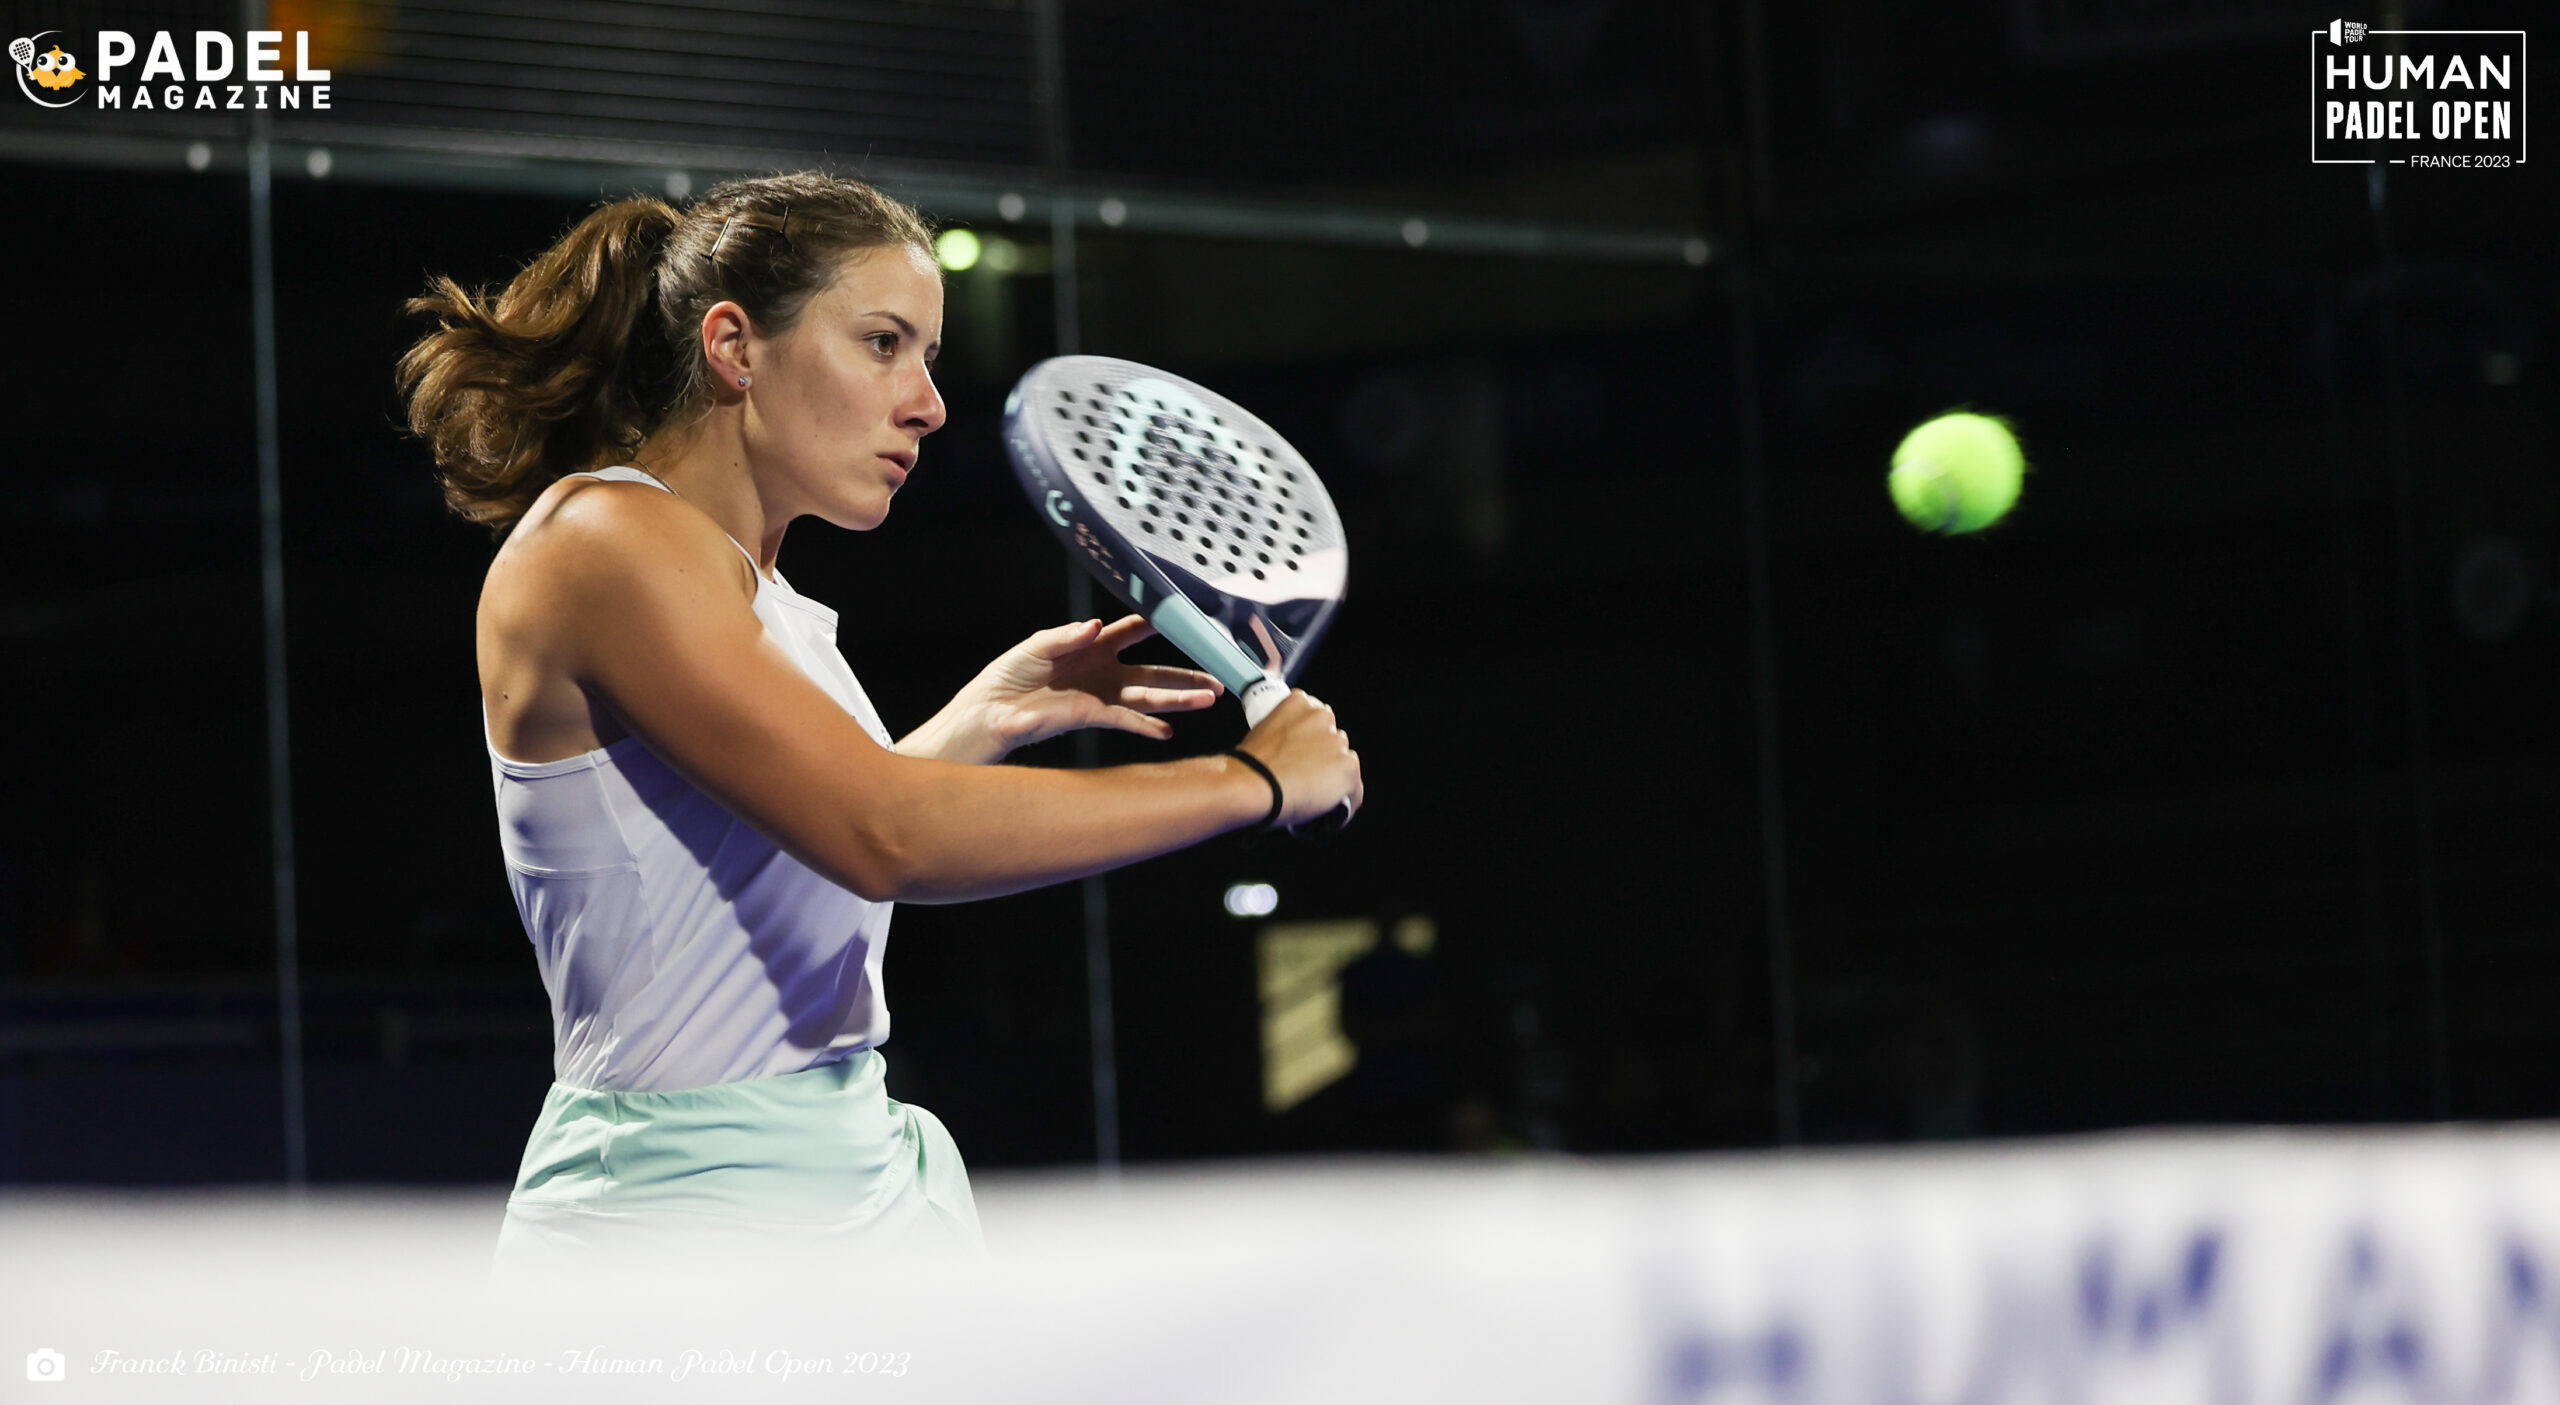 Lucile Pothier: “Tennisspillere, der mister deres ydmyghed, klarer vi os uden padel"